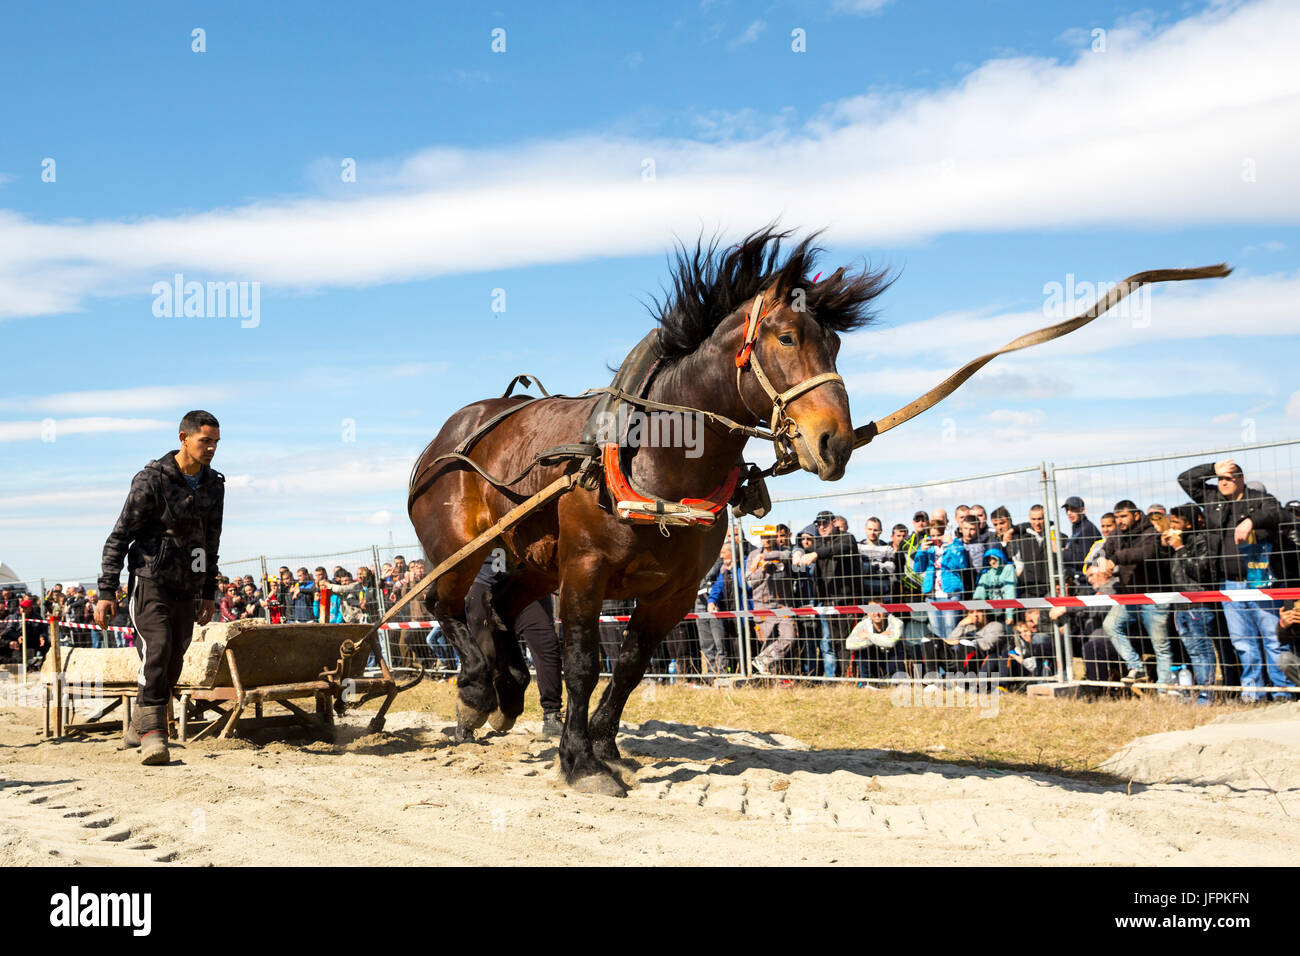 Sofia, Bulgarien - 3. März 2017: Pferde und ihre Besitzer an einem schweren Zug-Turnier teilnehmen. Die Tieren muss eine Last von Hunderten von Kilogra ziehen Stockfoto